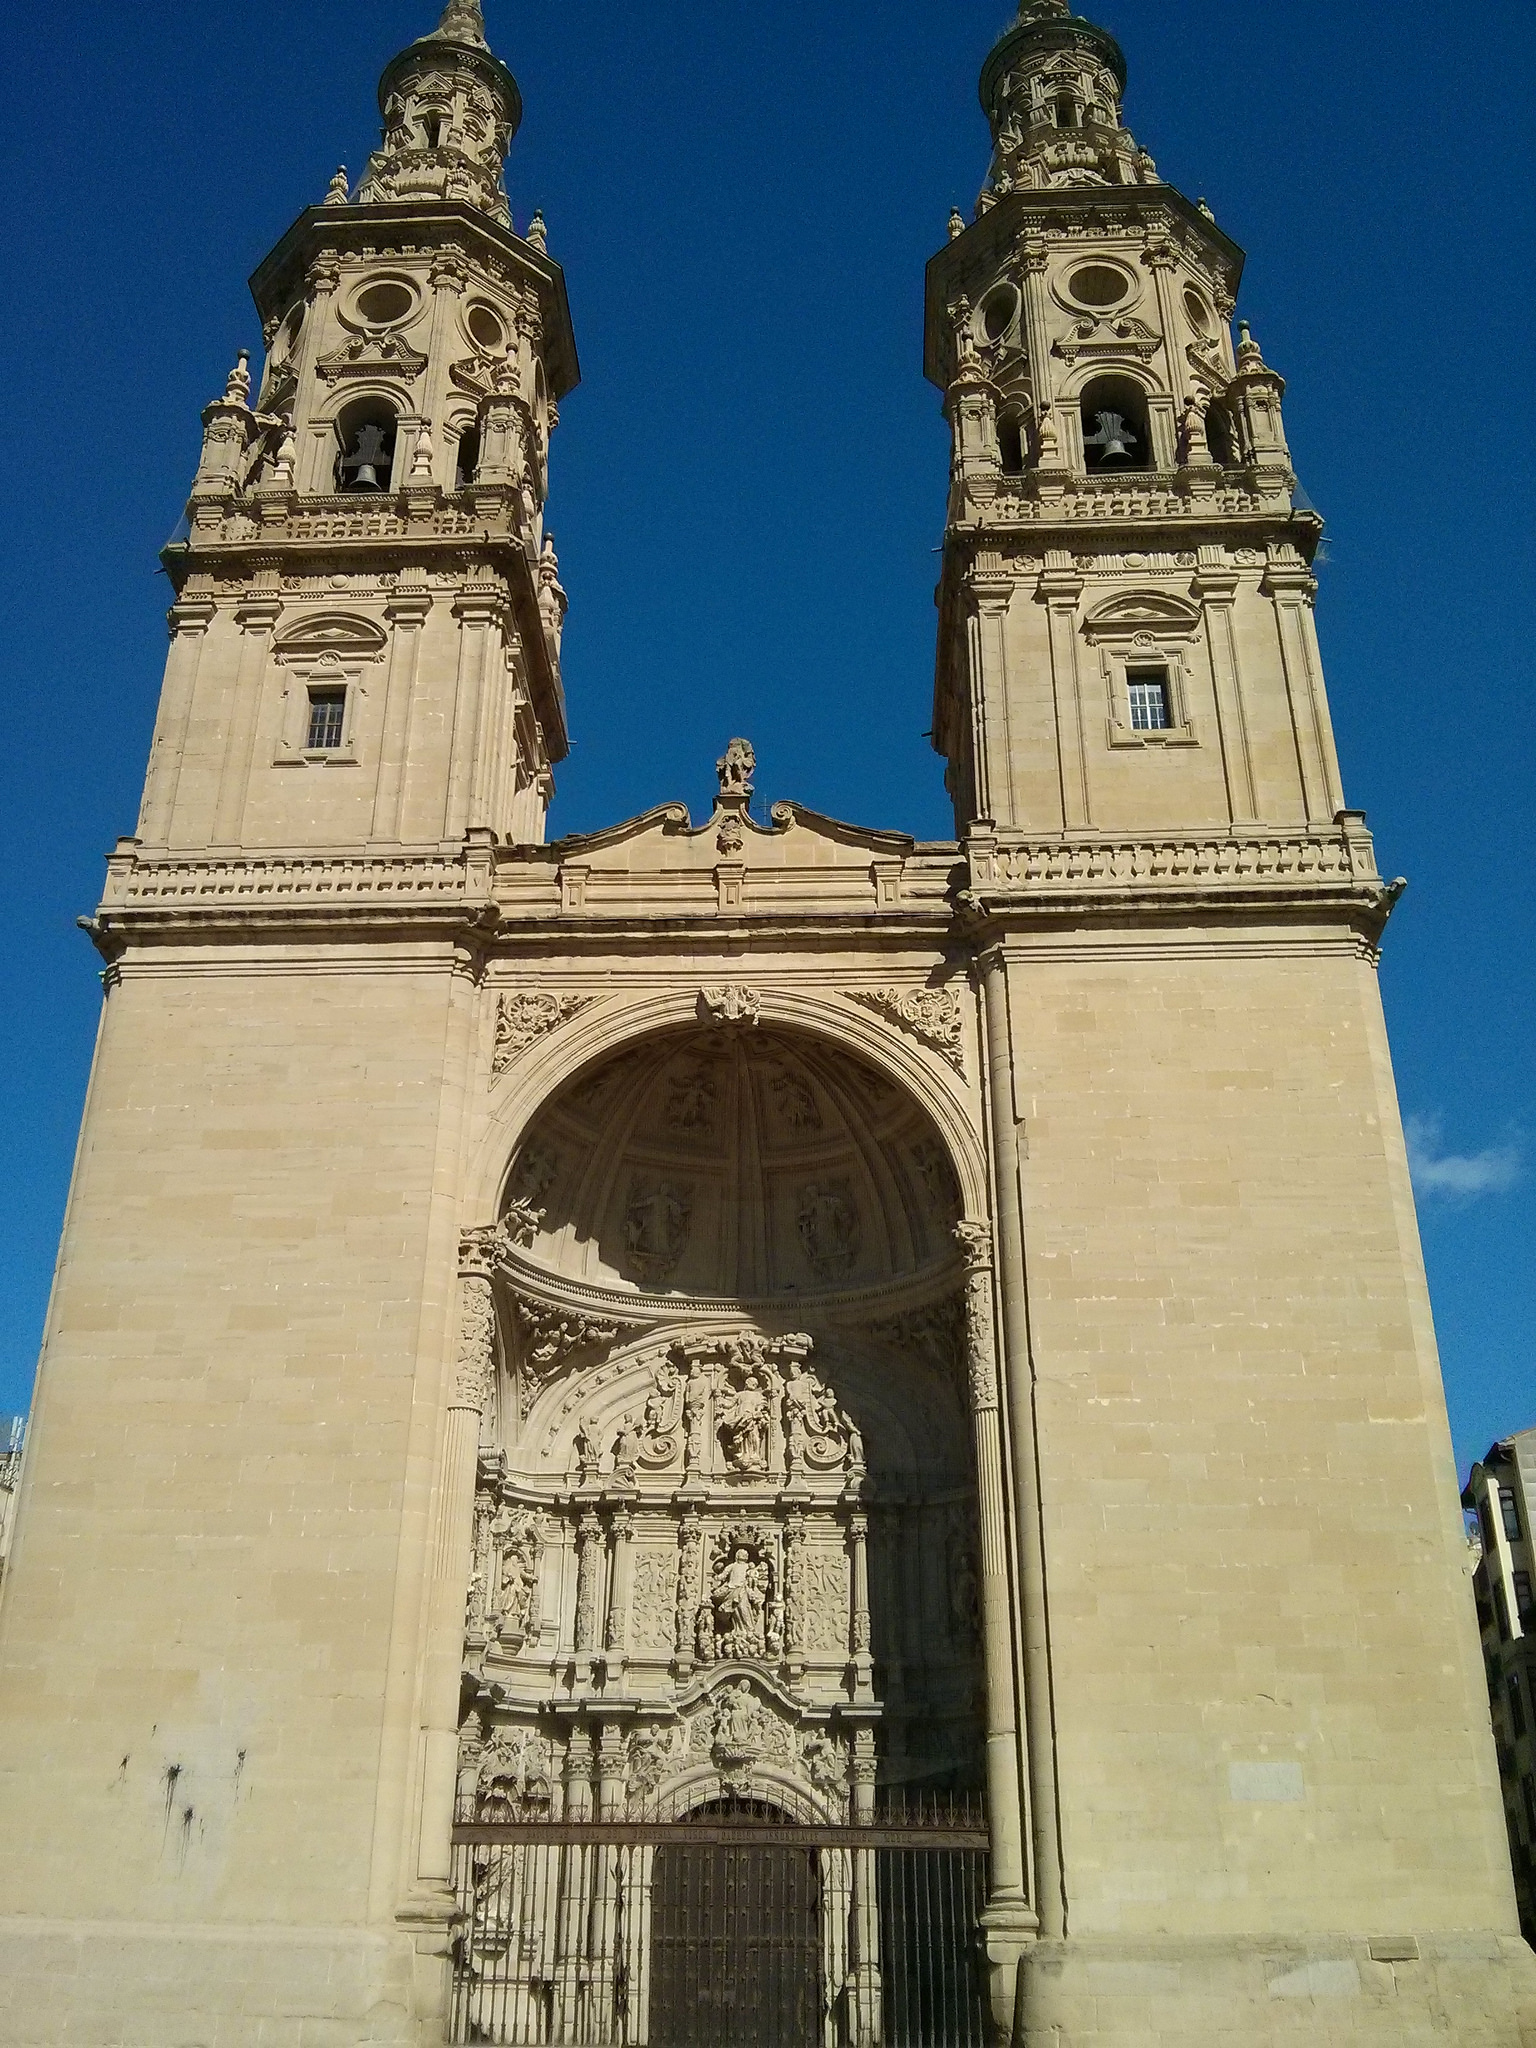 Fachada de la Concatedral (fotografía cedida en Flickr por Antonio Periago Miñarro bajo las siguientes condiciones)